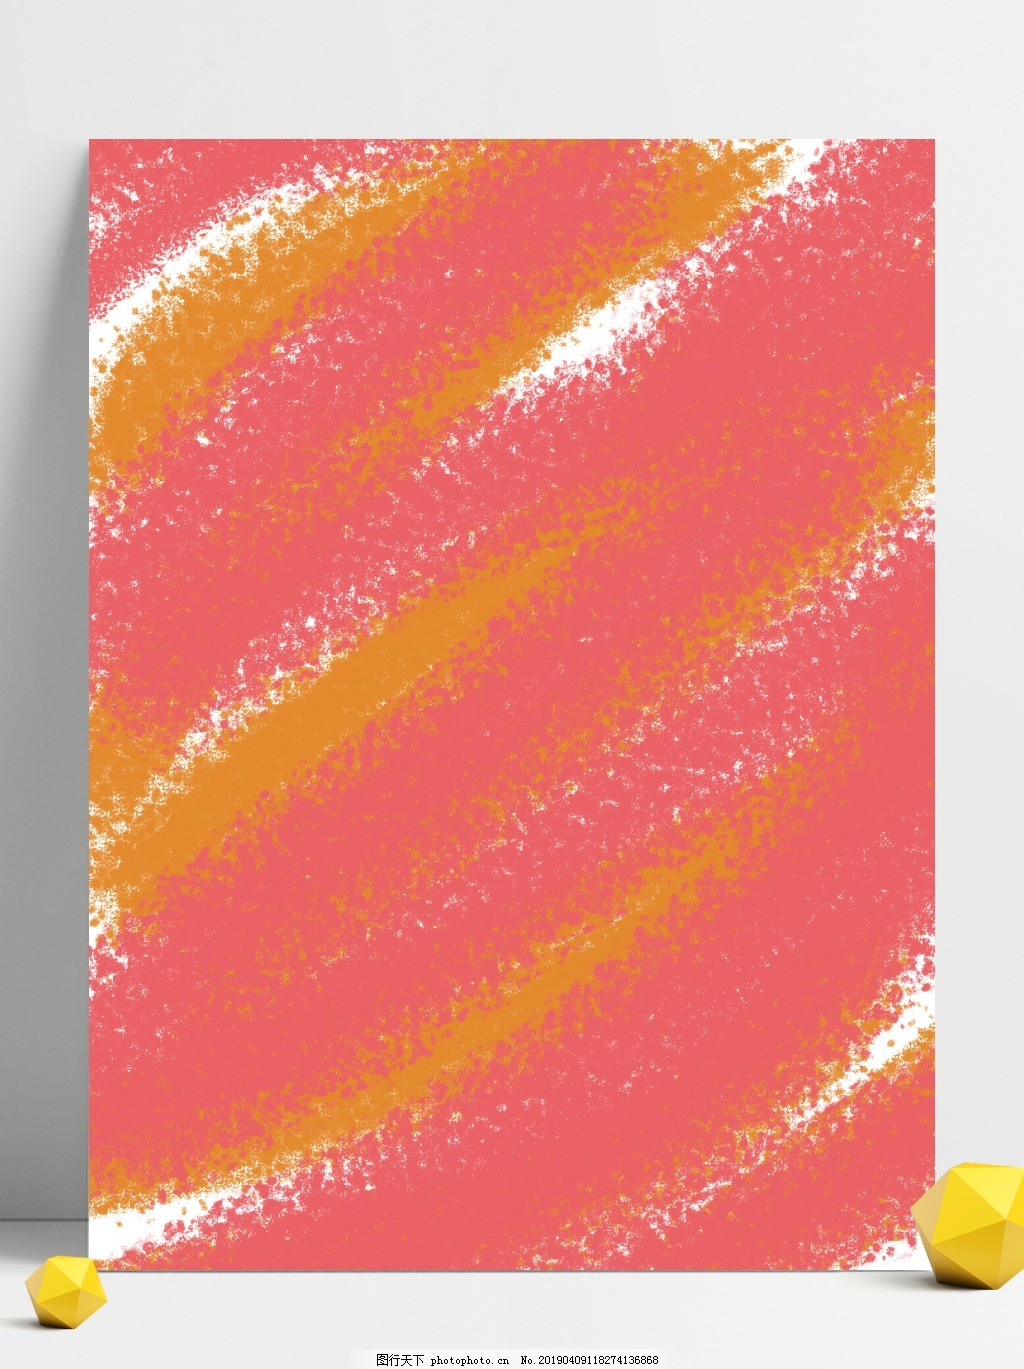 ‘~彩色油画笔刷水彩抽象四月通用高清背景_广告背景_底纹边框-  ~’ 的图片